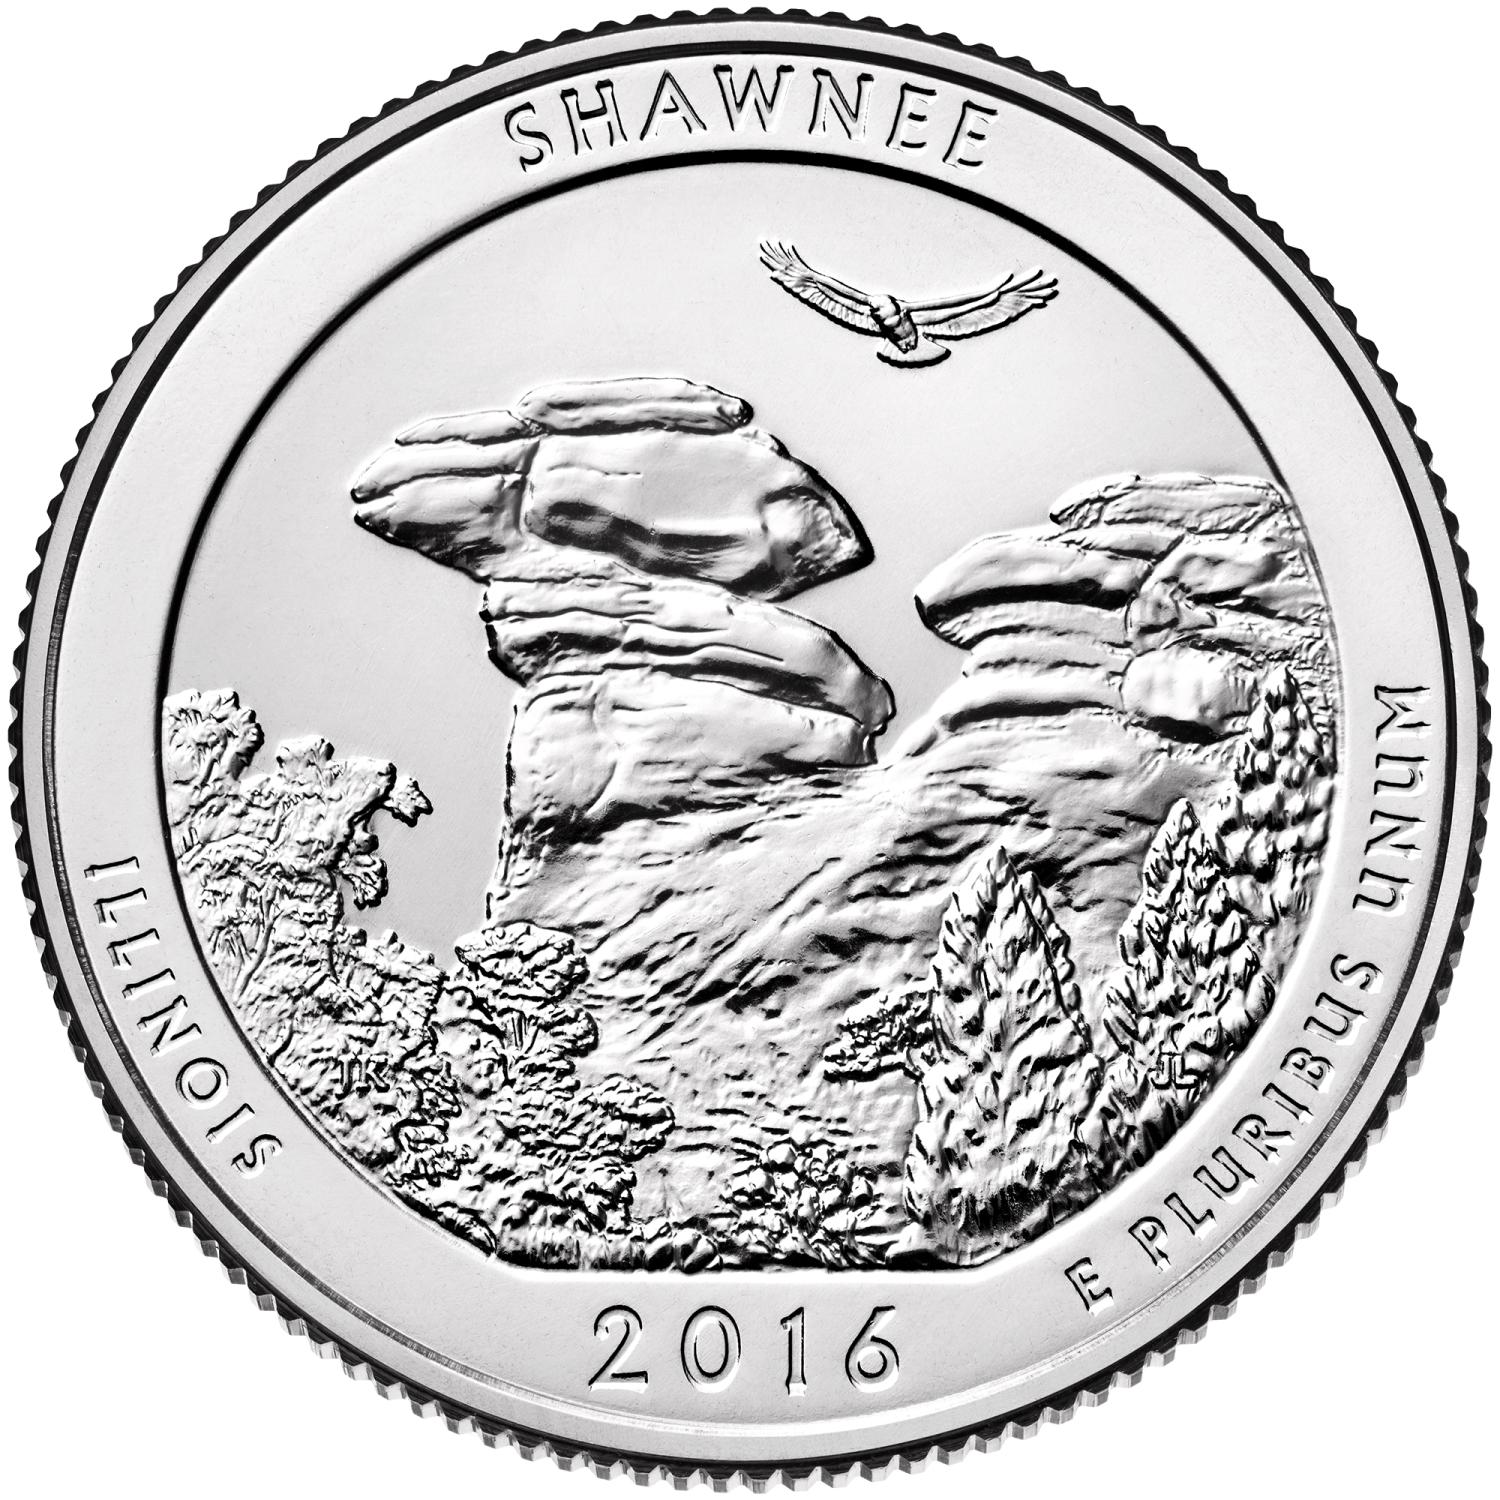 Quarter Dollar Commémorative des Etats-Unis 2016 - Shawnee National Forest